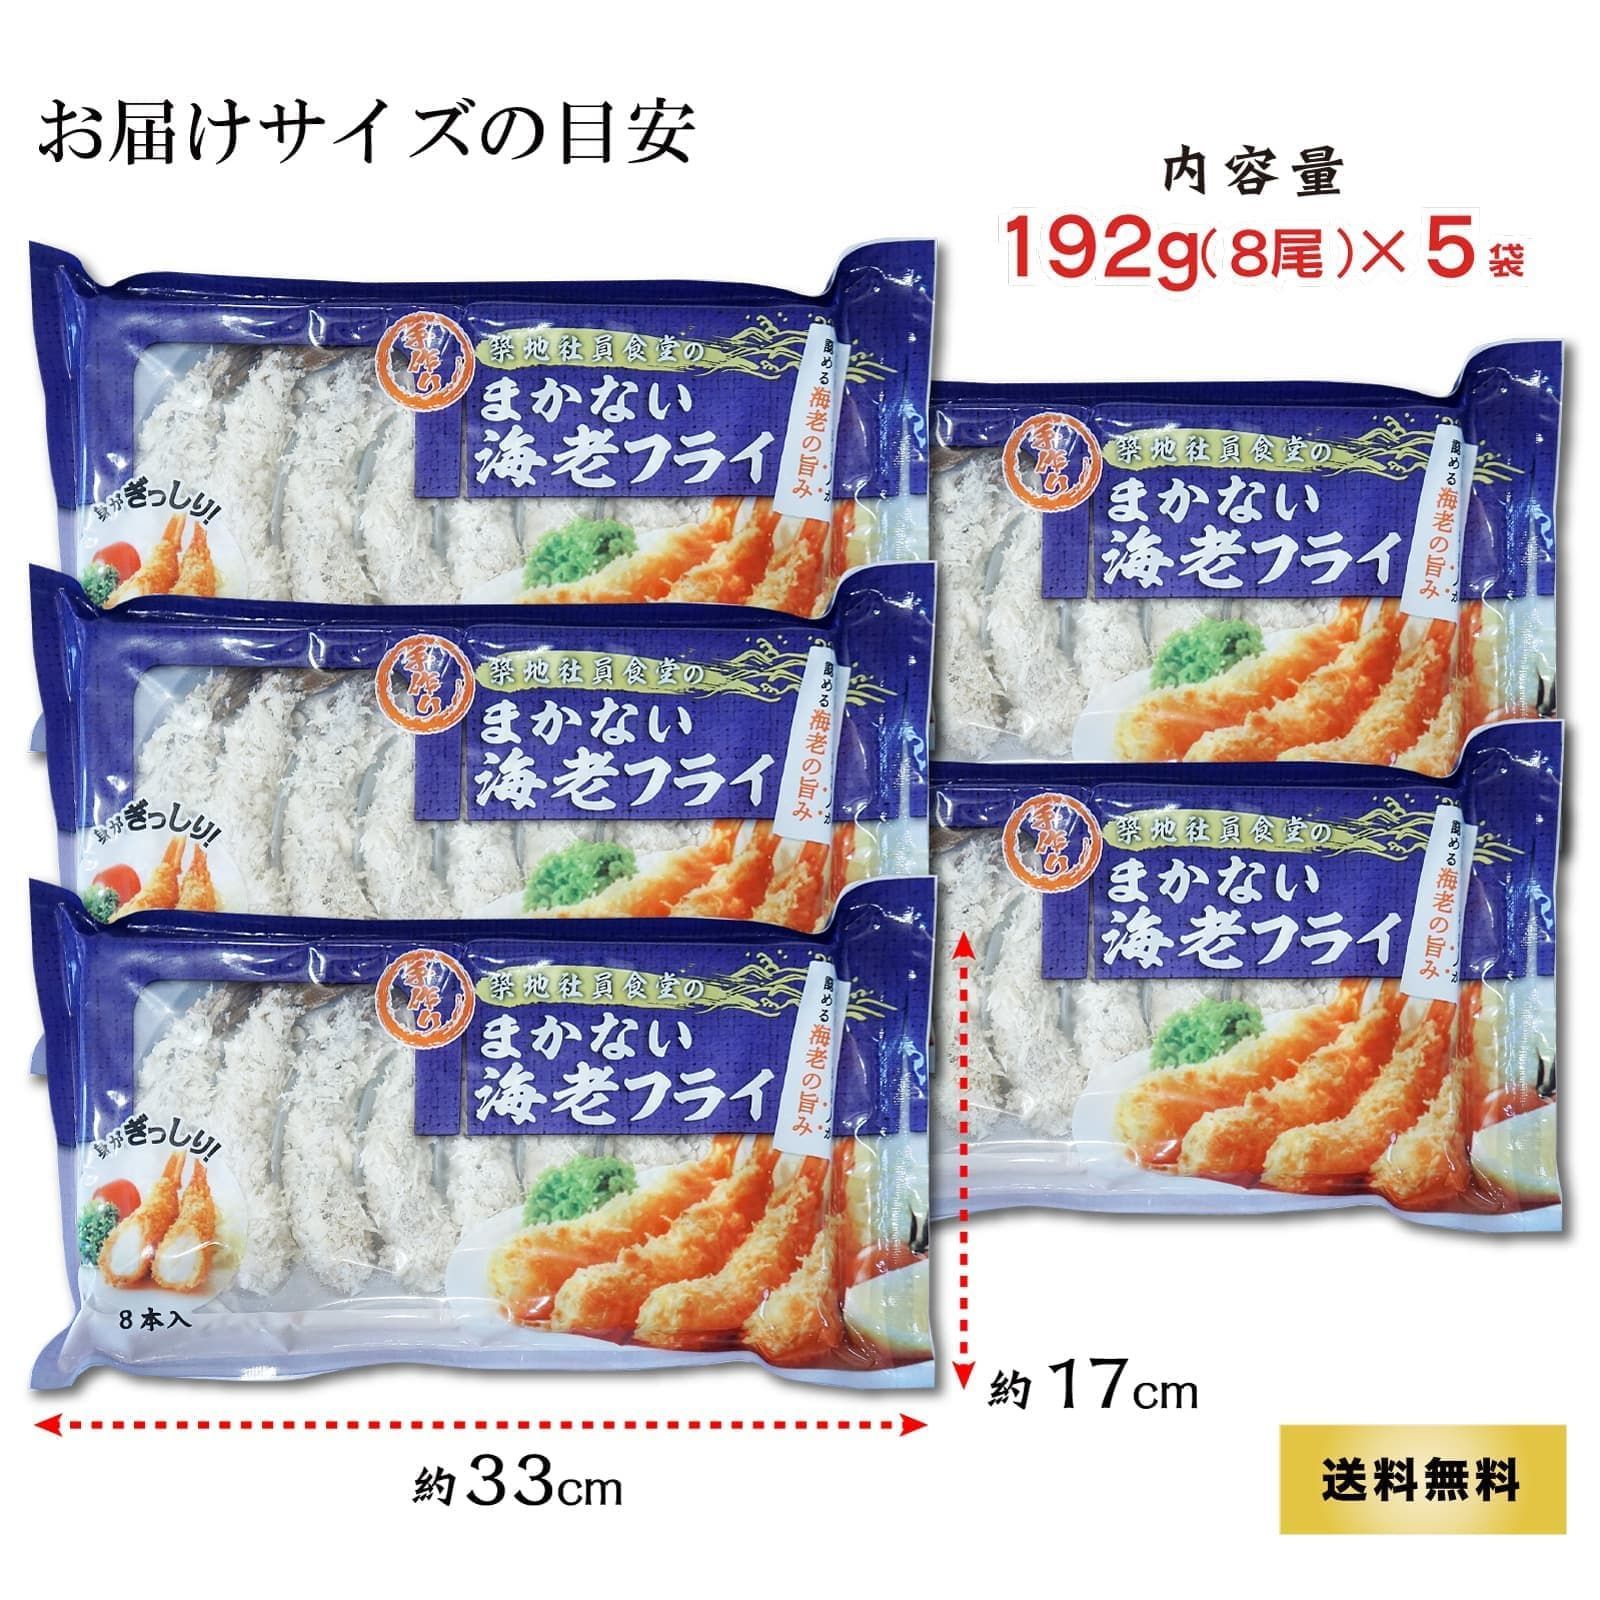 惣菜 エビフライ 192g(8尾)×5袋 冷凍食品 お弁当 おかず えび フレッシュ 海老フライ 揚げ物 - メルカリ